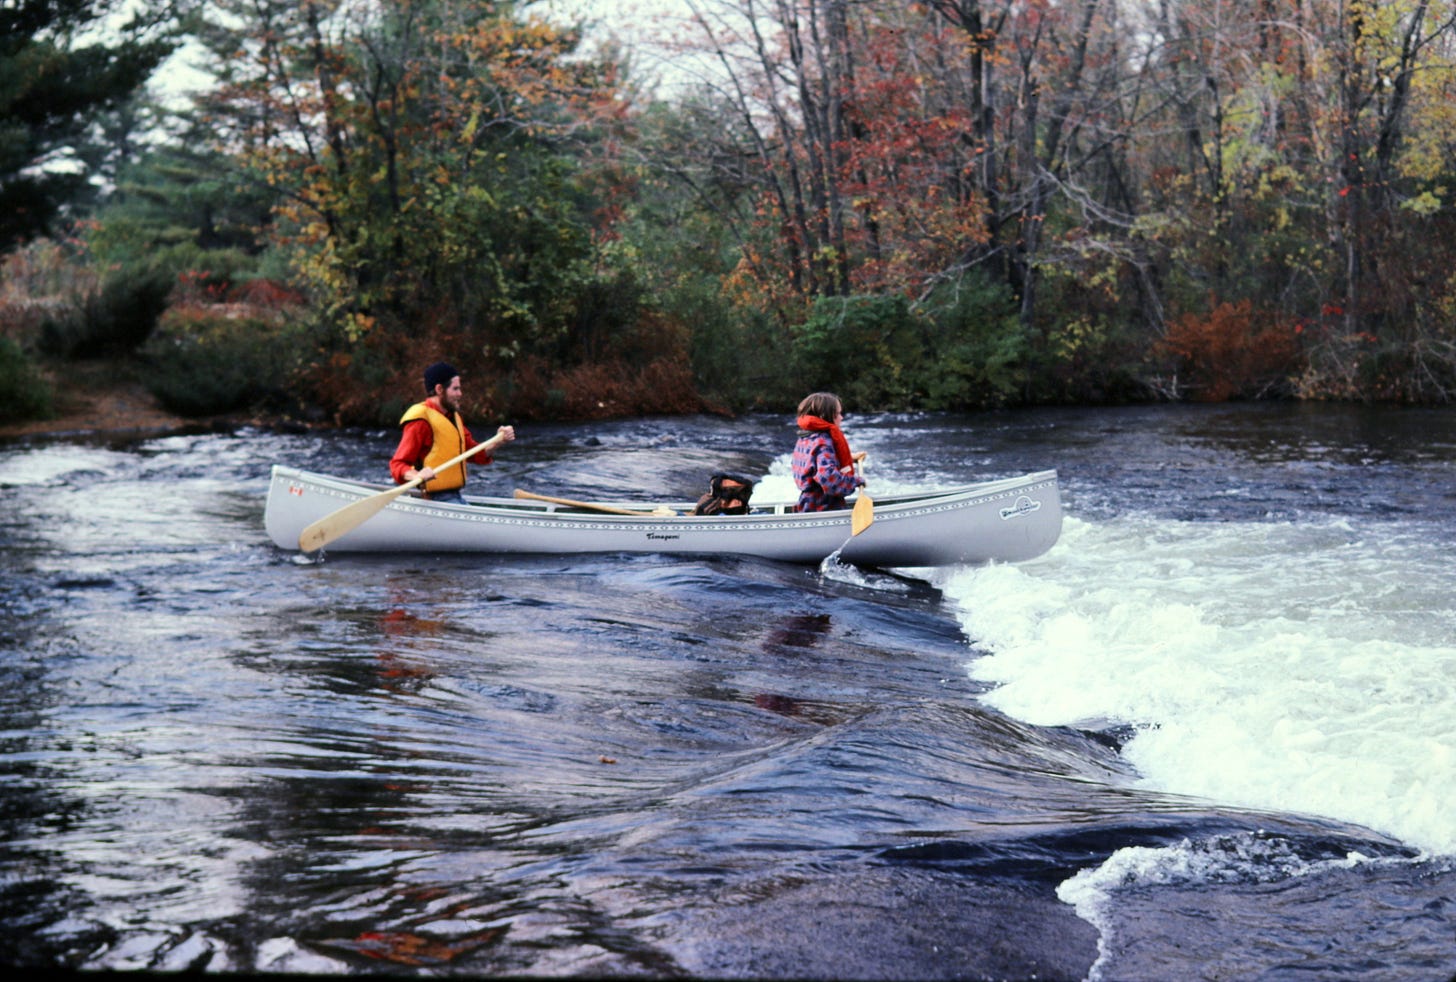 Canoe going over rapids, Eel's Creek, 1982